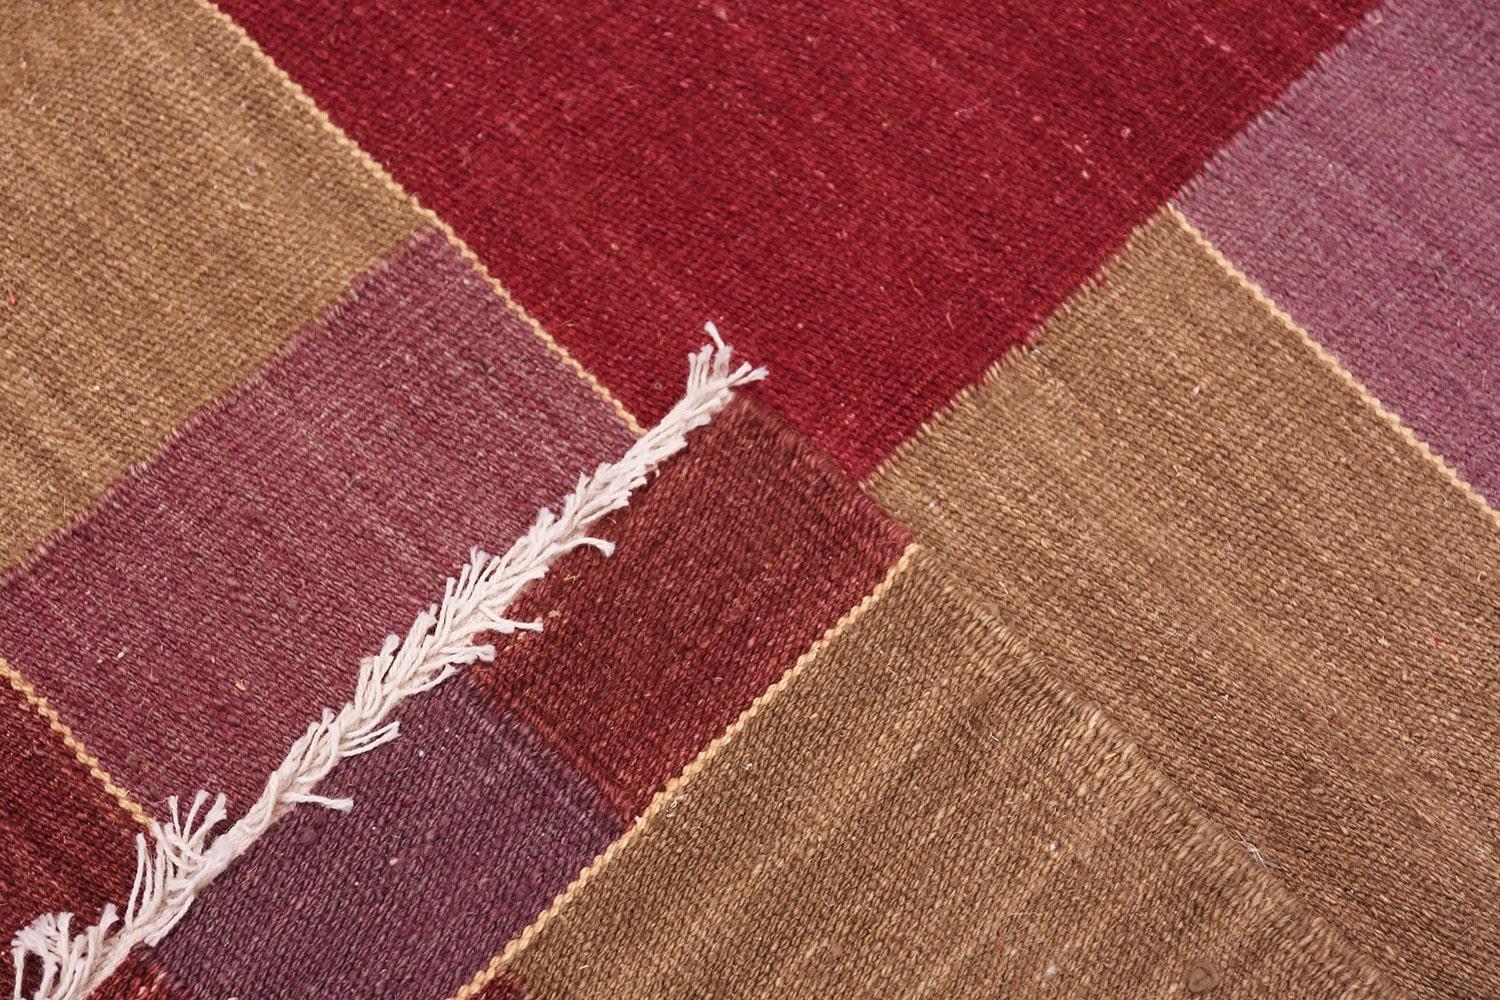 Hand-Woven Swedish Inspired Scandinavian Modern Kilim Carpet. Size: 7 ft x 9 ft 2 in